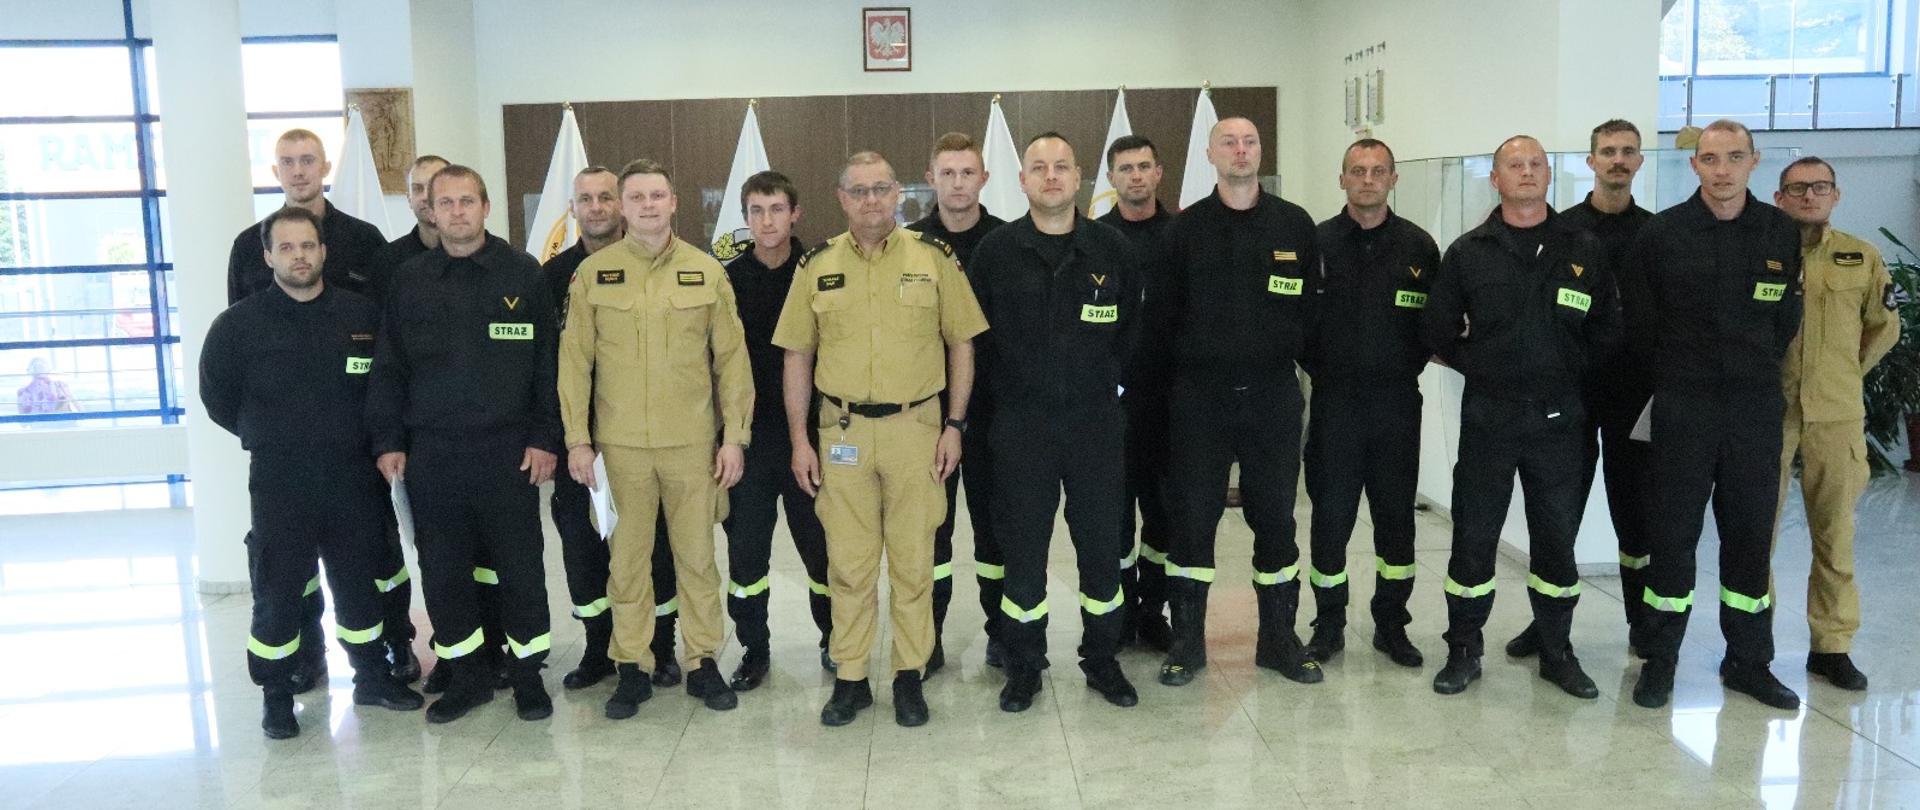 Grupowe zdjęcie uczestników szkolenia kierowców (14 funkcjonariuszy PSP) w towarzystwie Zastępcy Komendanta Centralnej Szkoły PSP oraz oficera CS PSP